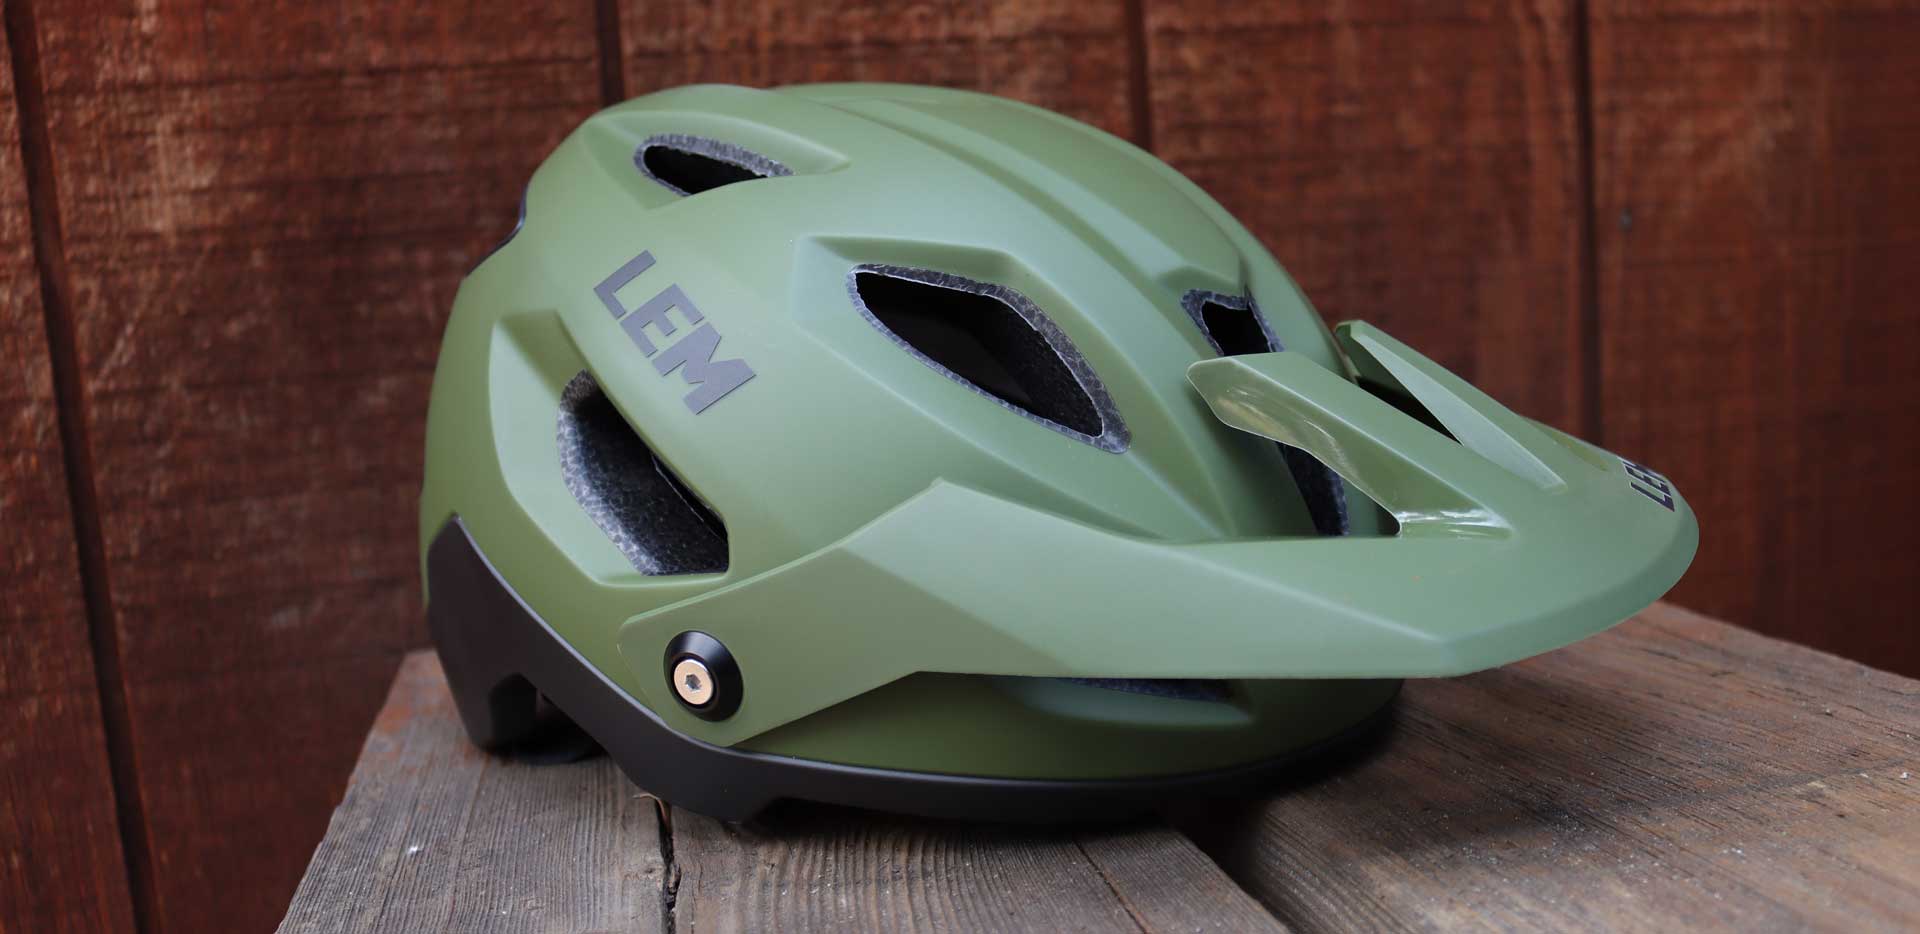 LEM Spyne Helmet Review